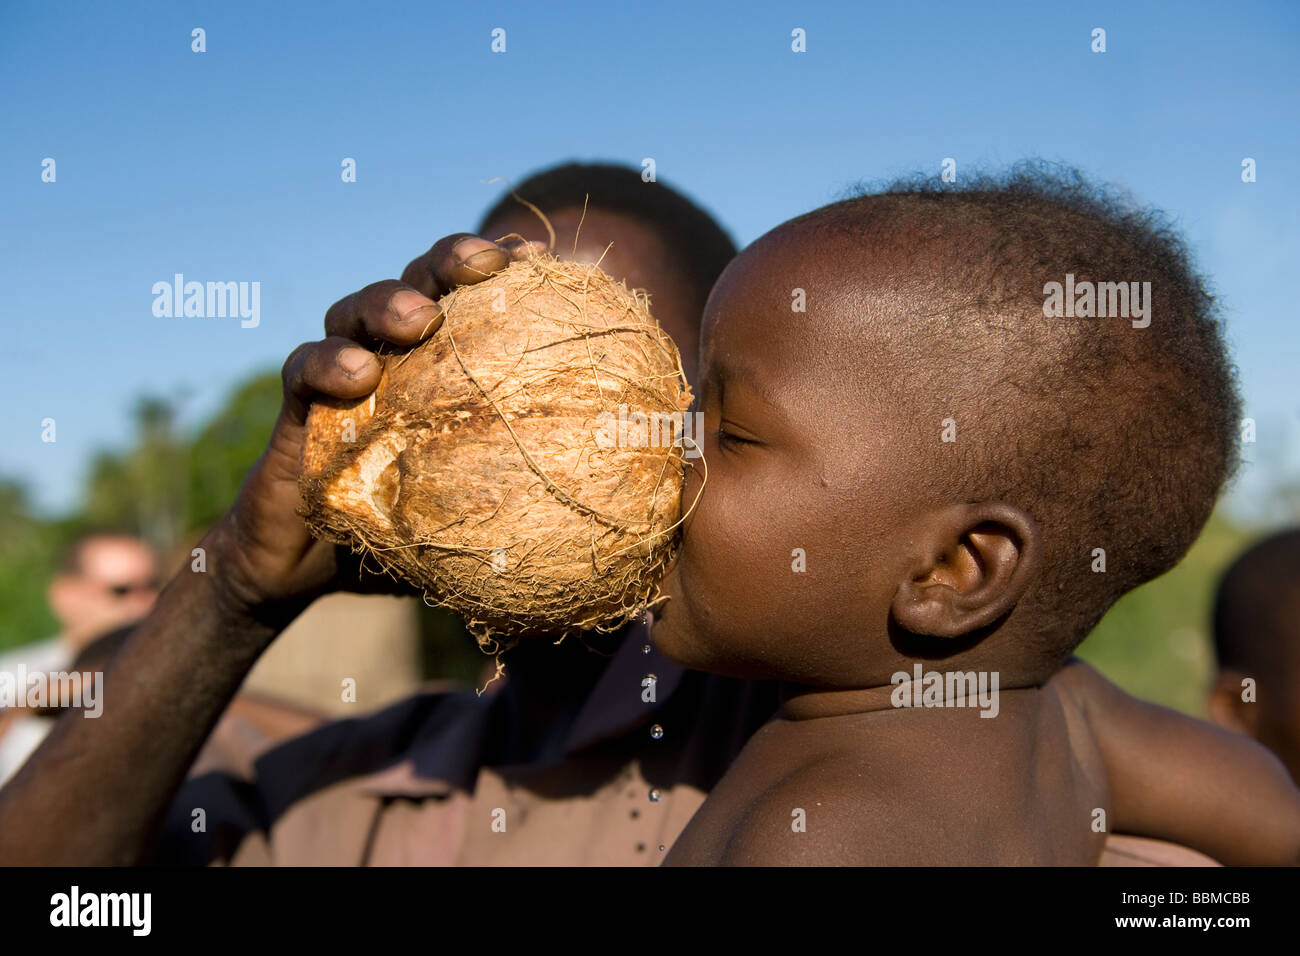 Infant drinks fresh coconut milk Quelimane Mozambique Stock Photo